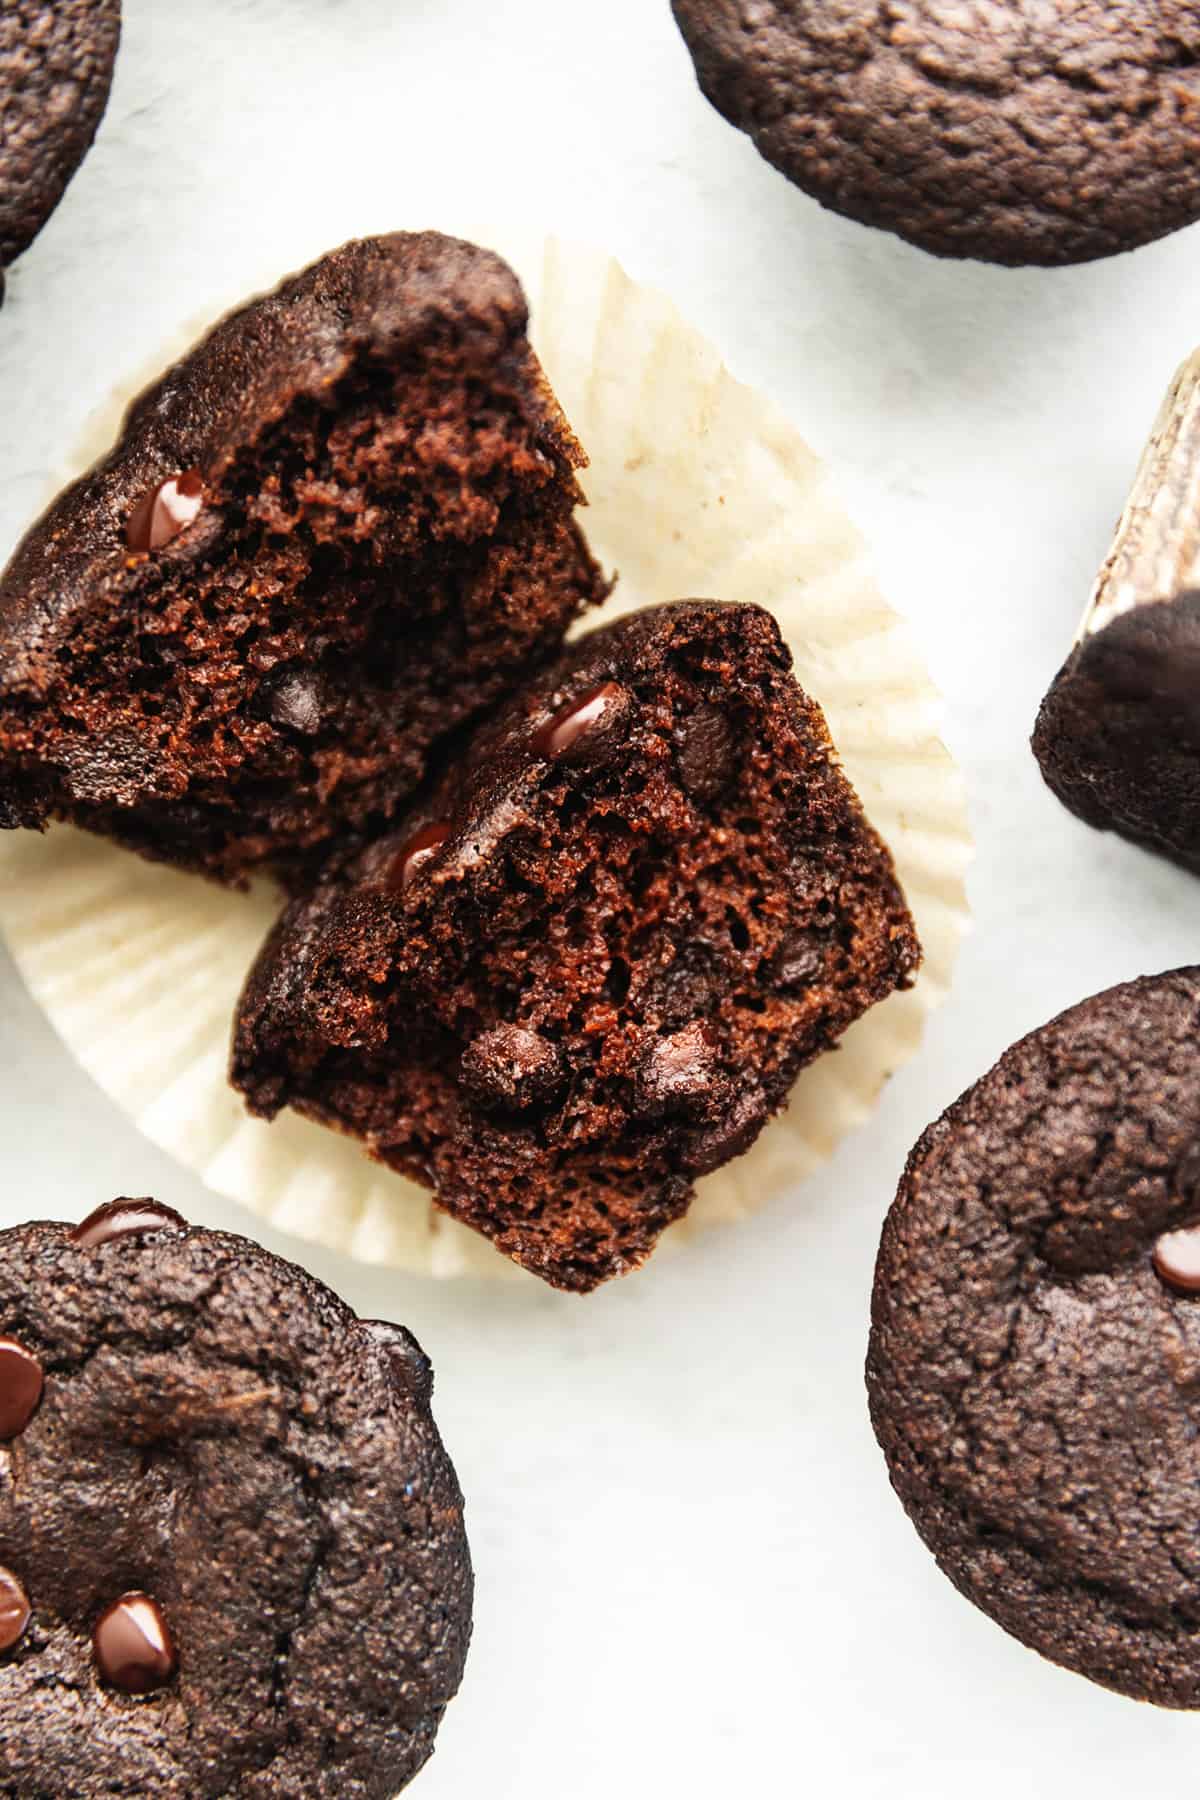 keto fudge chocolate muffins cut in half